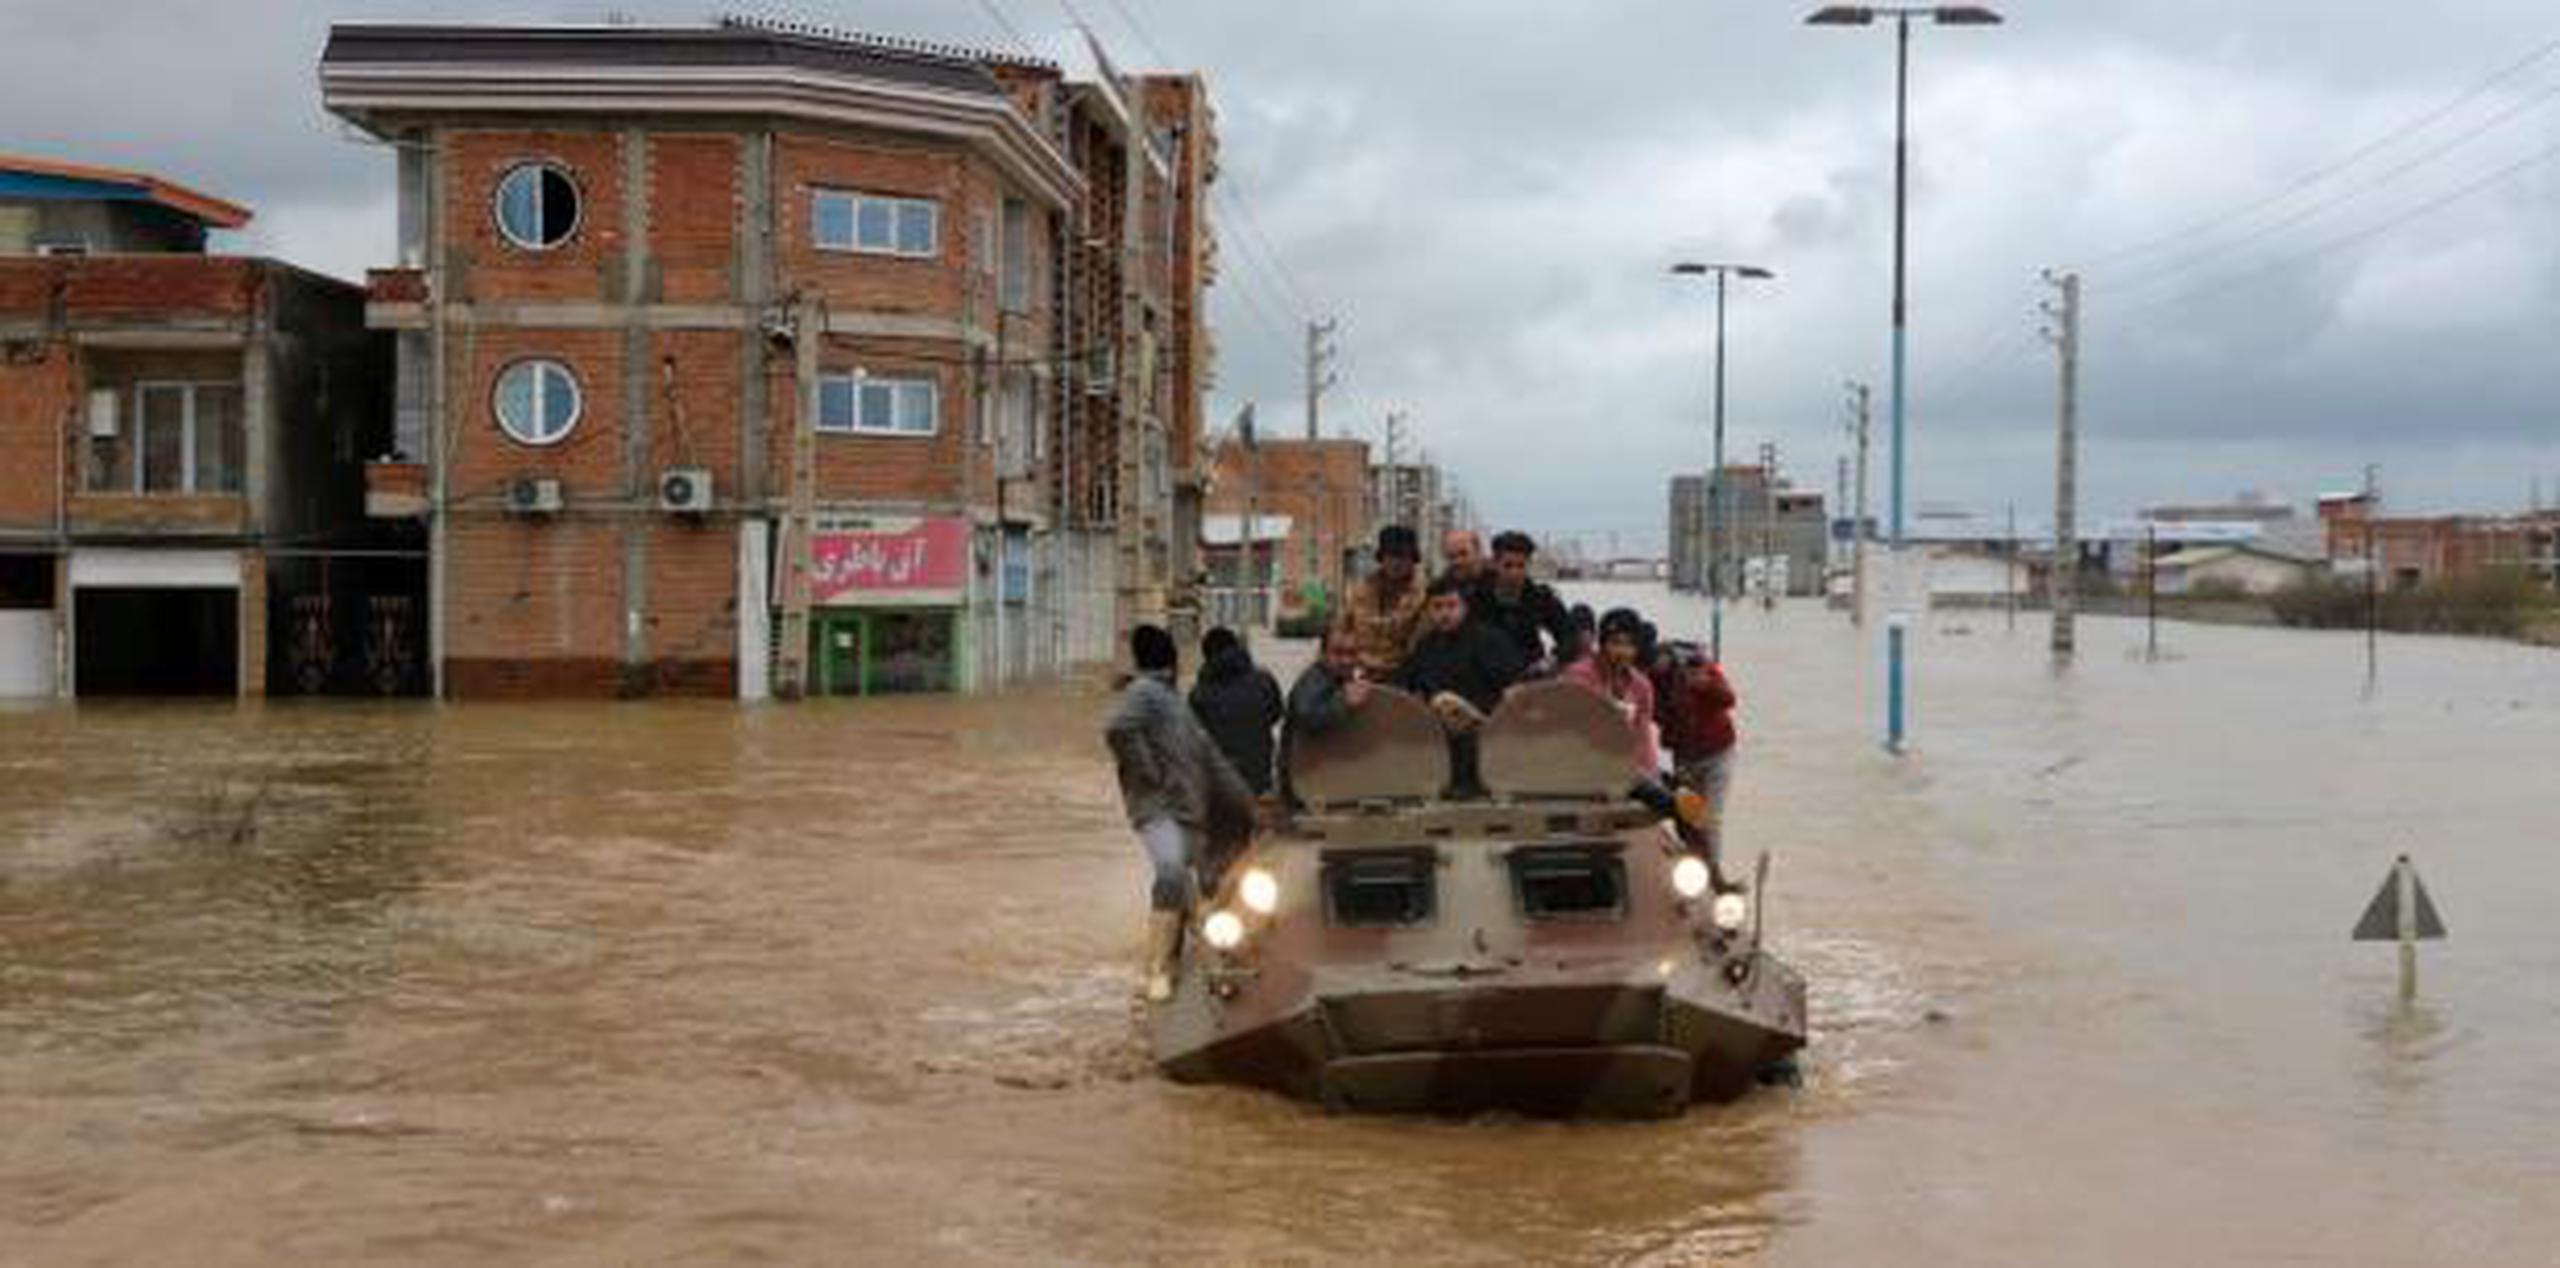 Todo el país se encuentra ahora en alerta, después de que en los últimos días murieran por las inundaciones nueve personas en las provincias septentrionales de Mazandaran, Golestan y Jorasán del Norte. (AP)